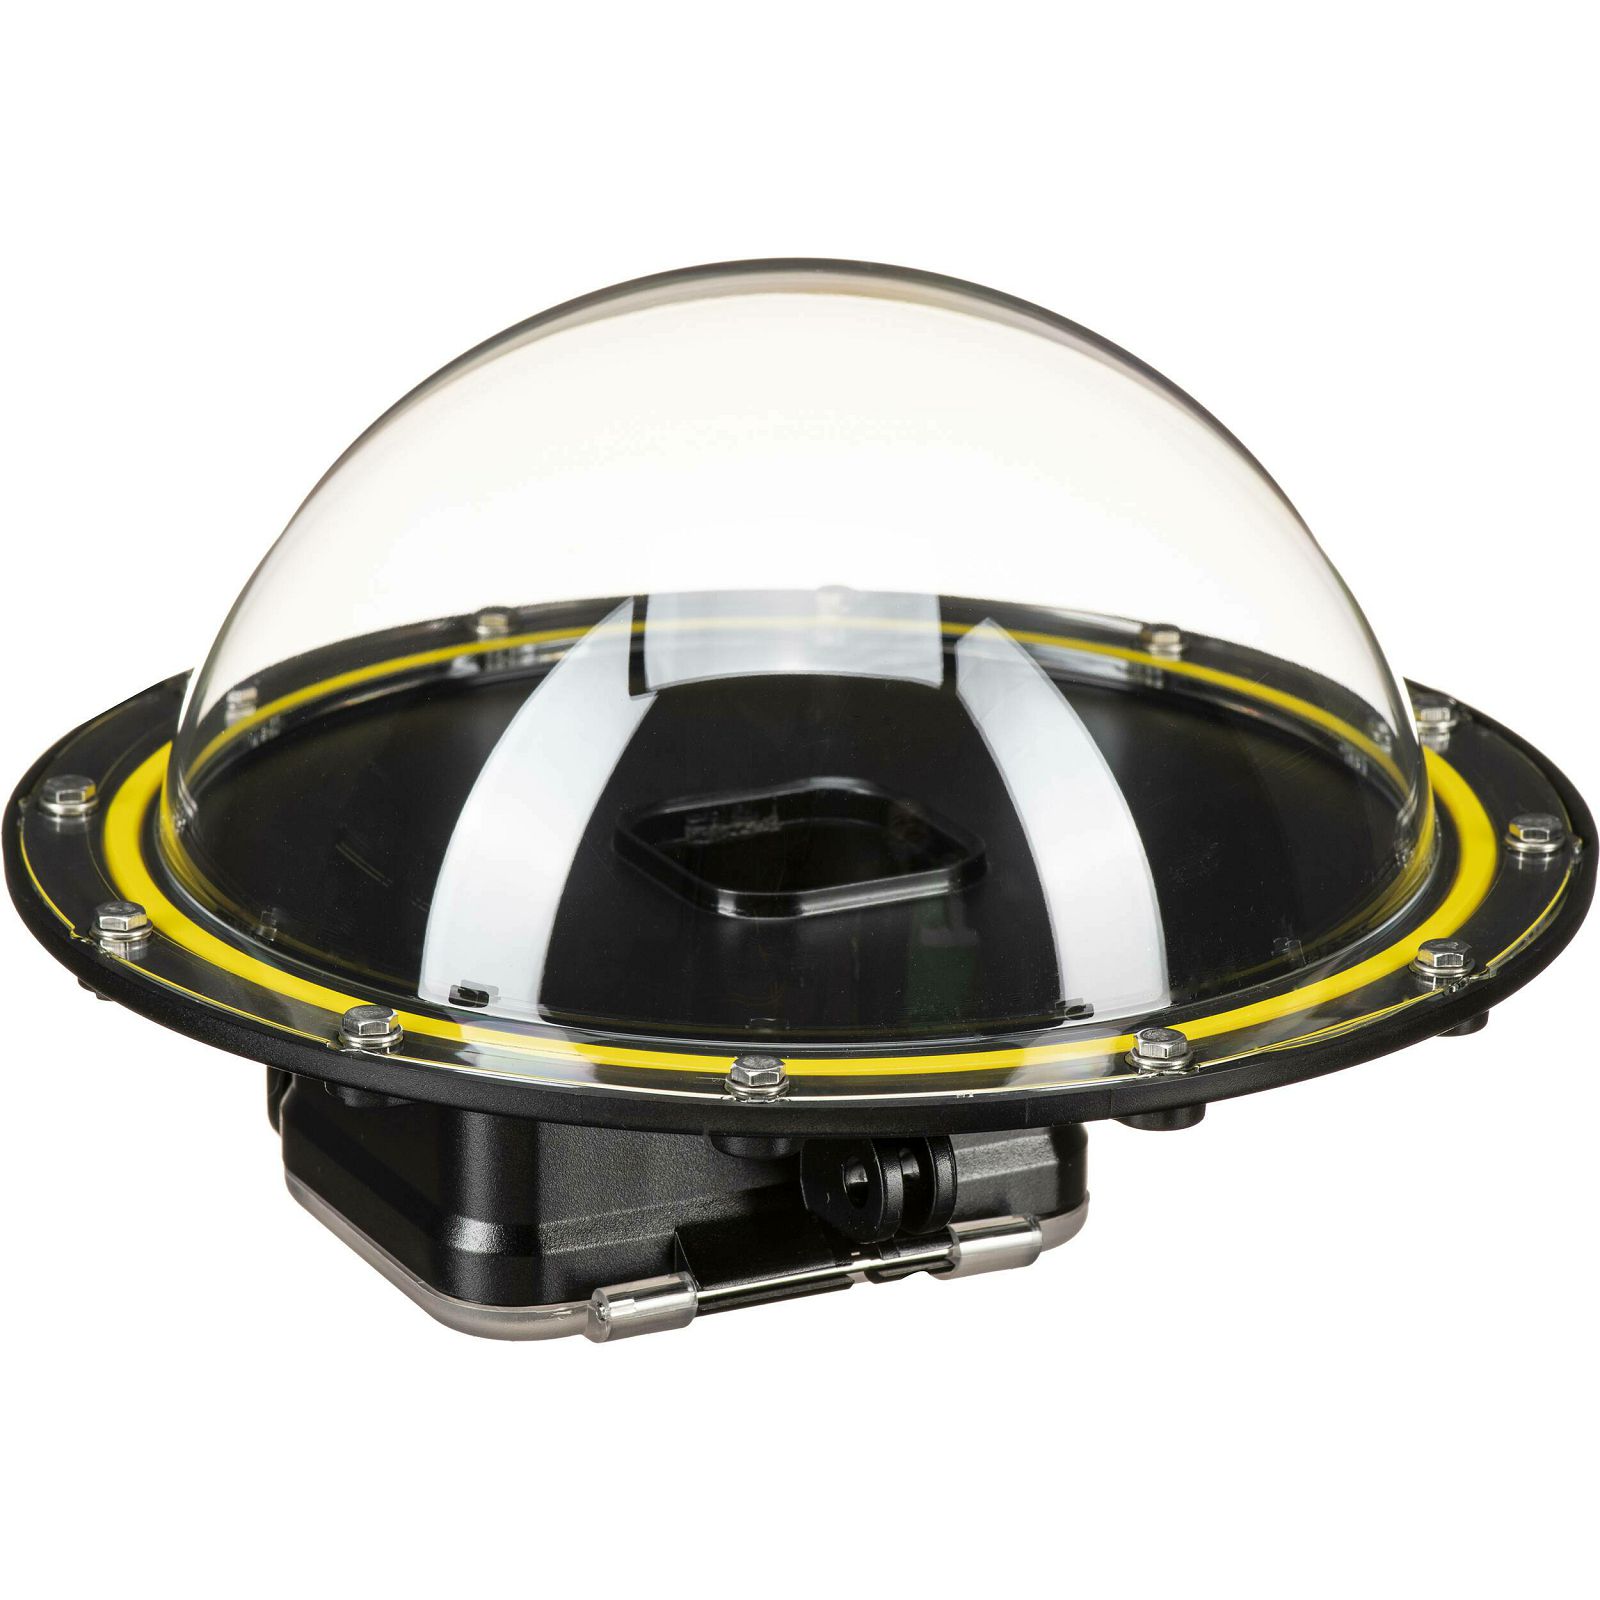 Telesin 6" Dome podvodno kućište za GoPro Hero11, Hero10, Hero9